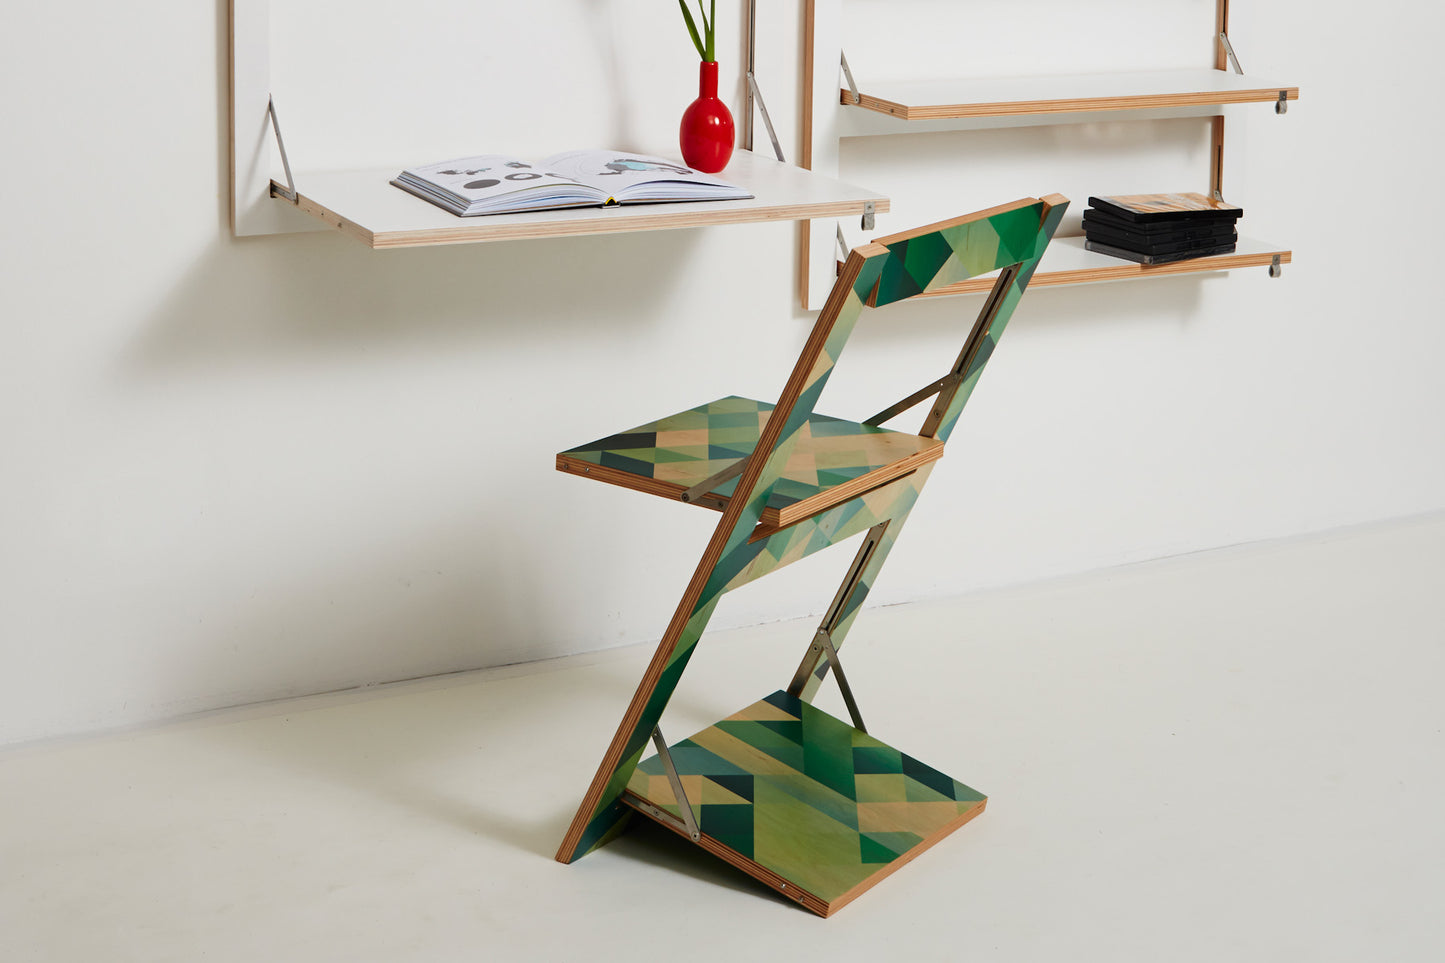 Fläpps Folding Chair – Criss Cross Green (on birch)